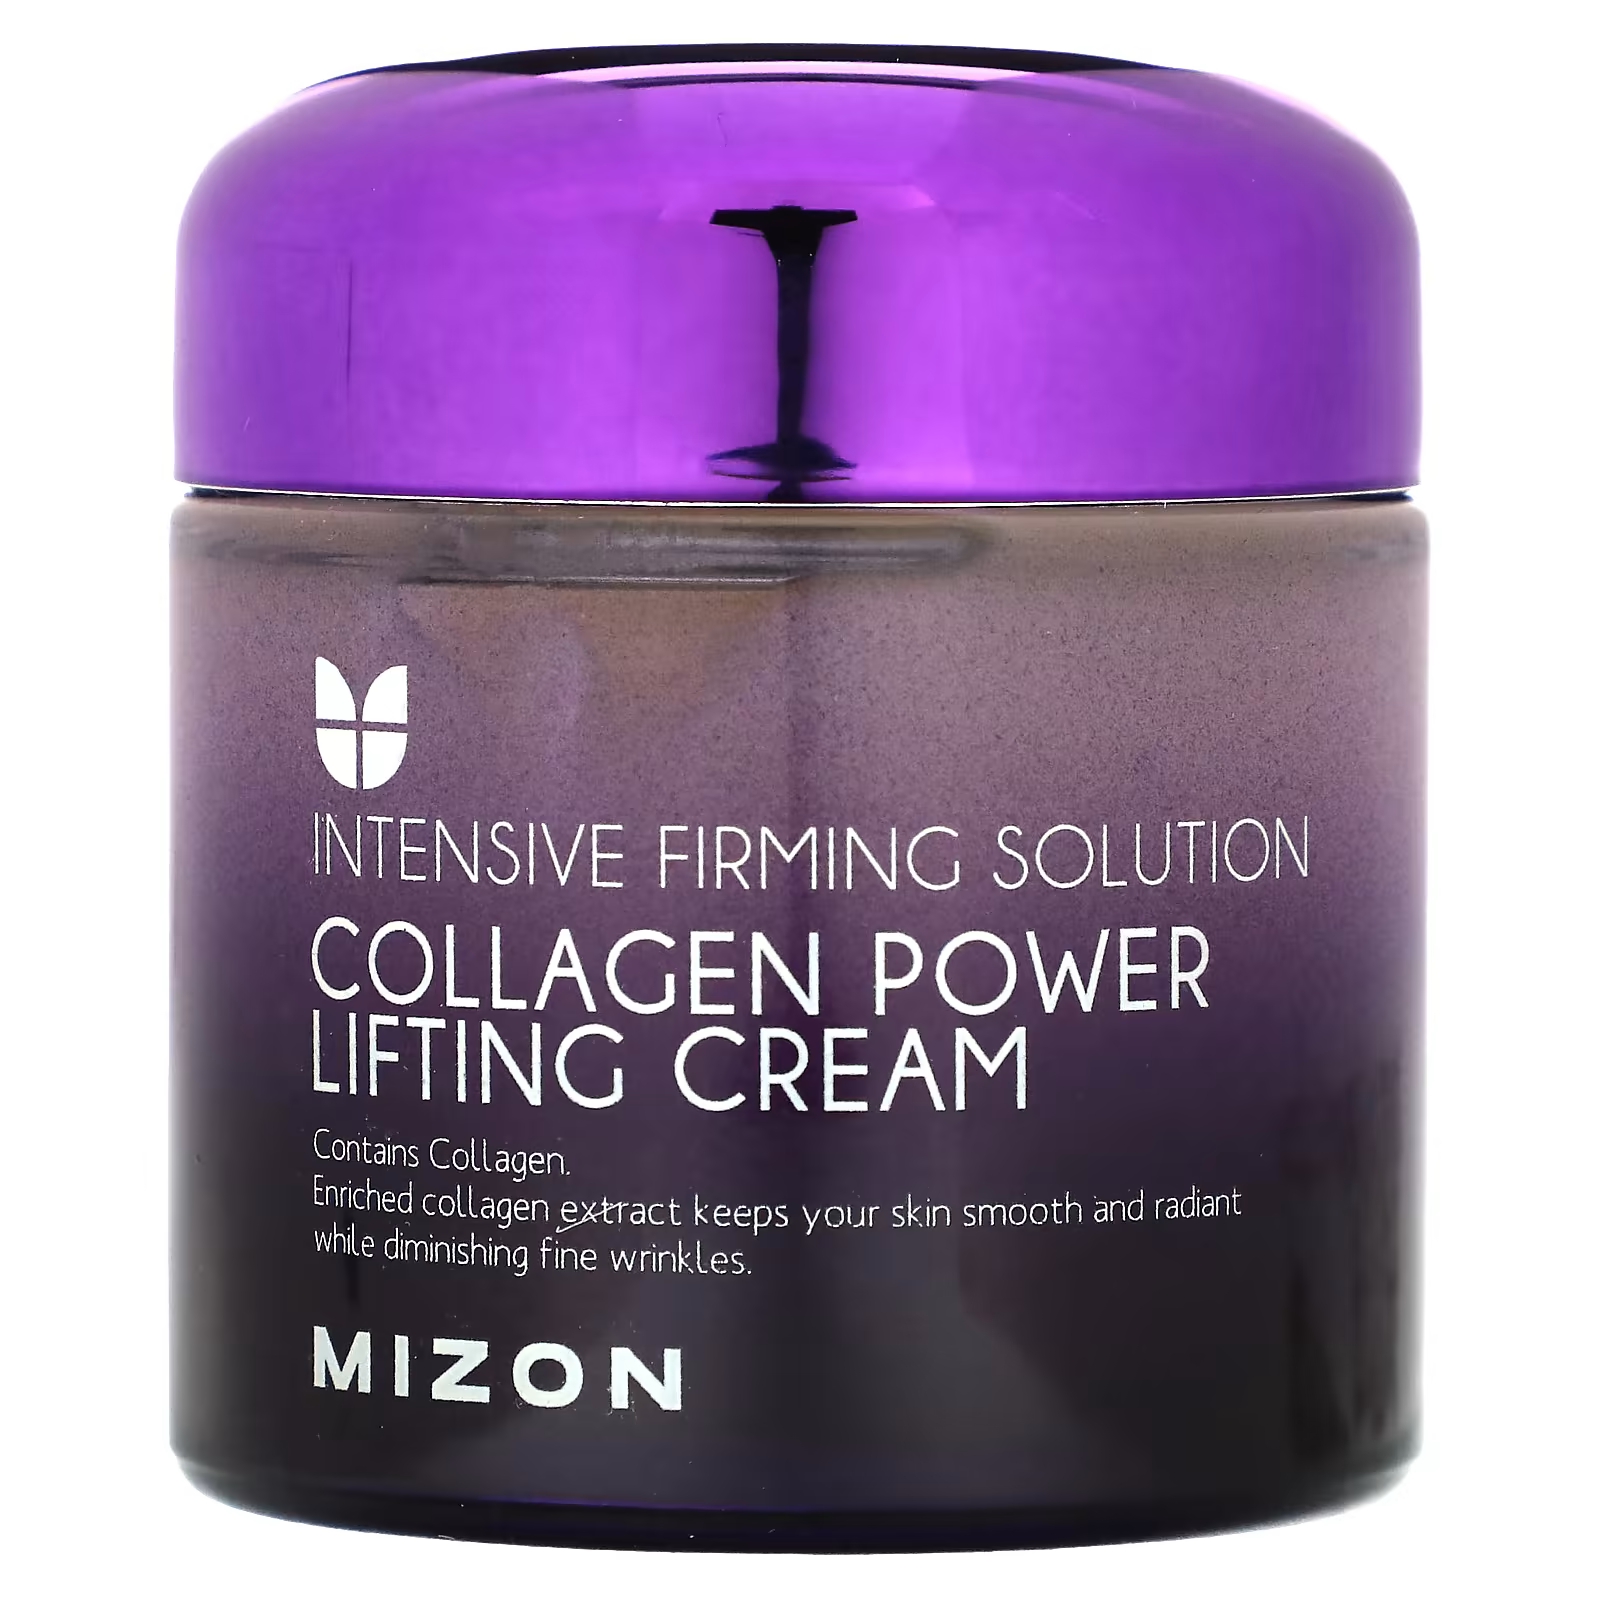 Крем-лифтинг Mizon Collagen Power Lifting Cream, 2,53 жидких унции (75 мл) mizon крем лифтинг с коллагеном 75 мл 2 53 унции